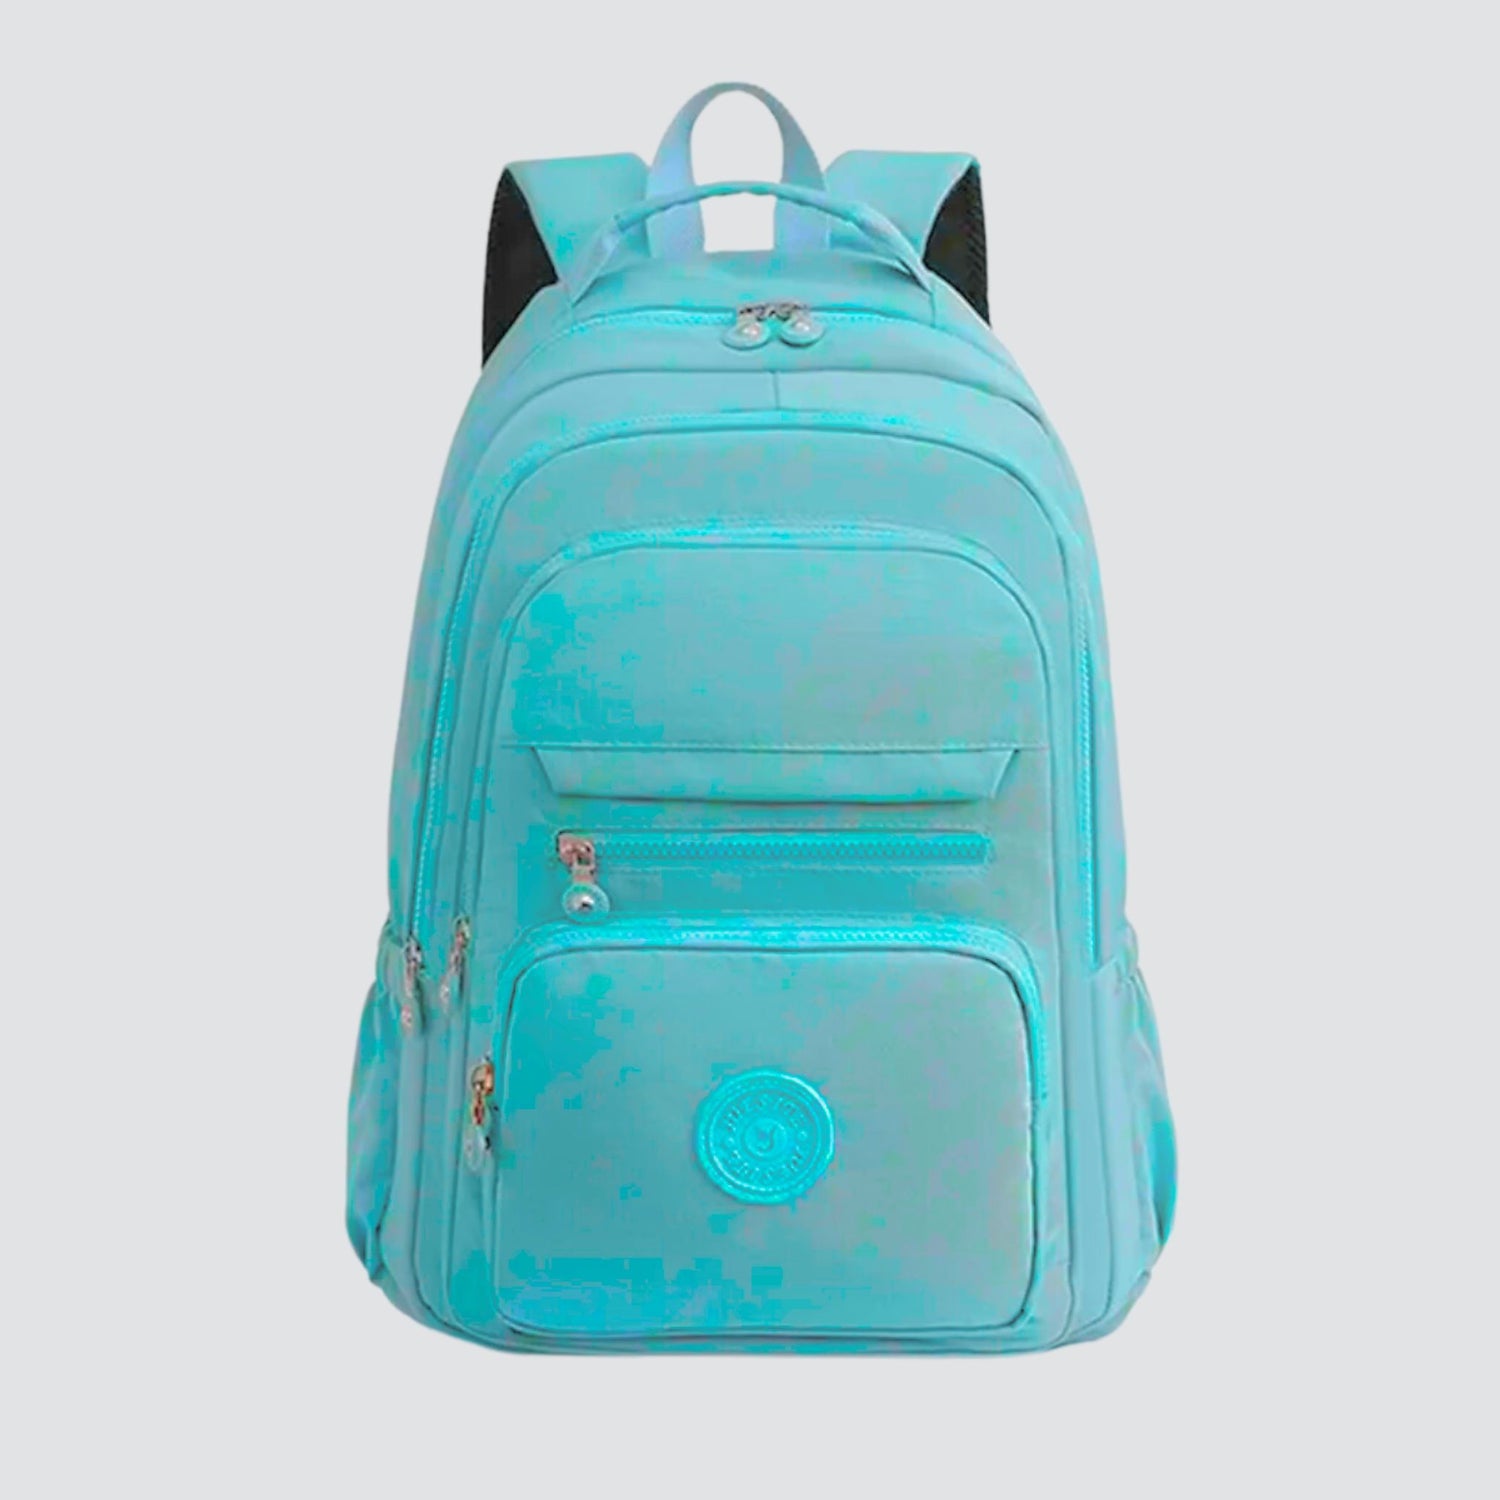 Aqua Blue Sport Backpack